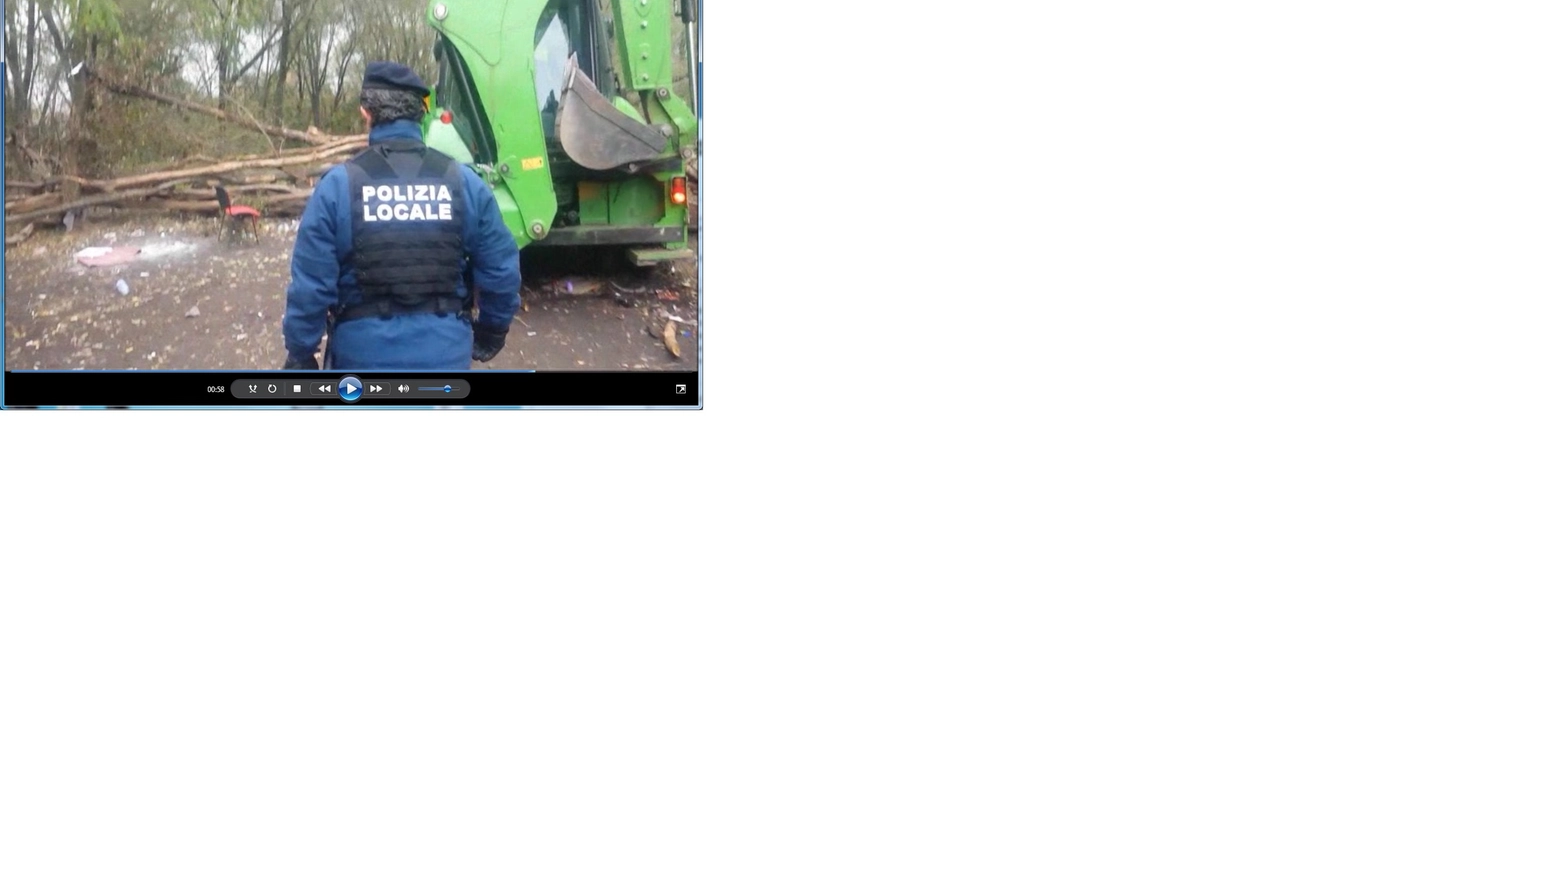 Polizia Locale in azione nel bosco dello spaccio